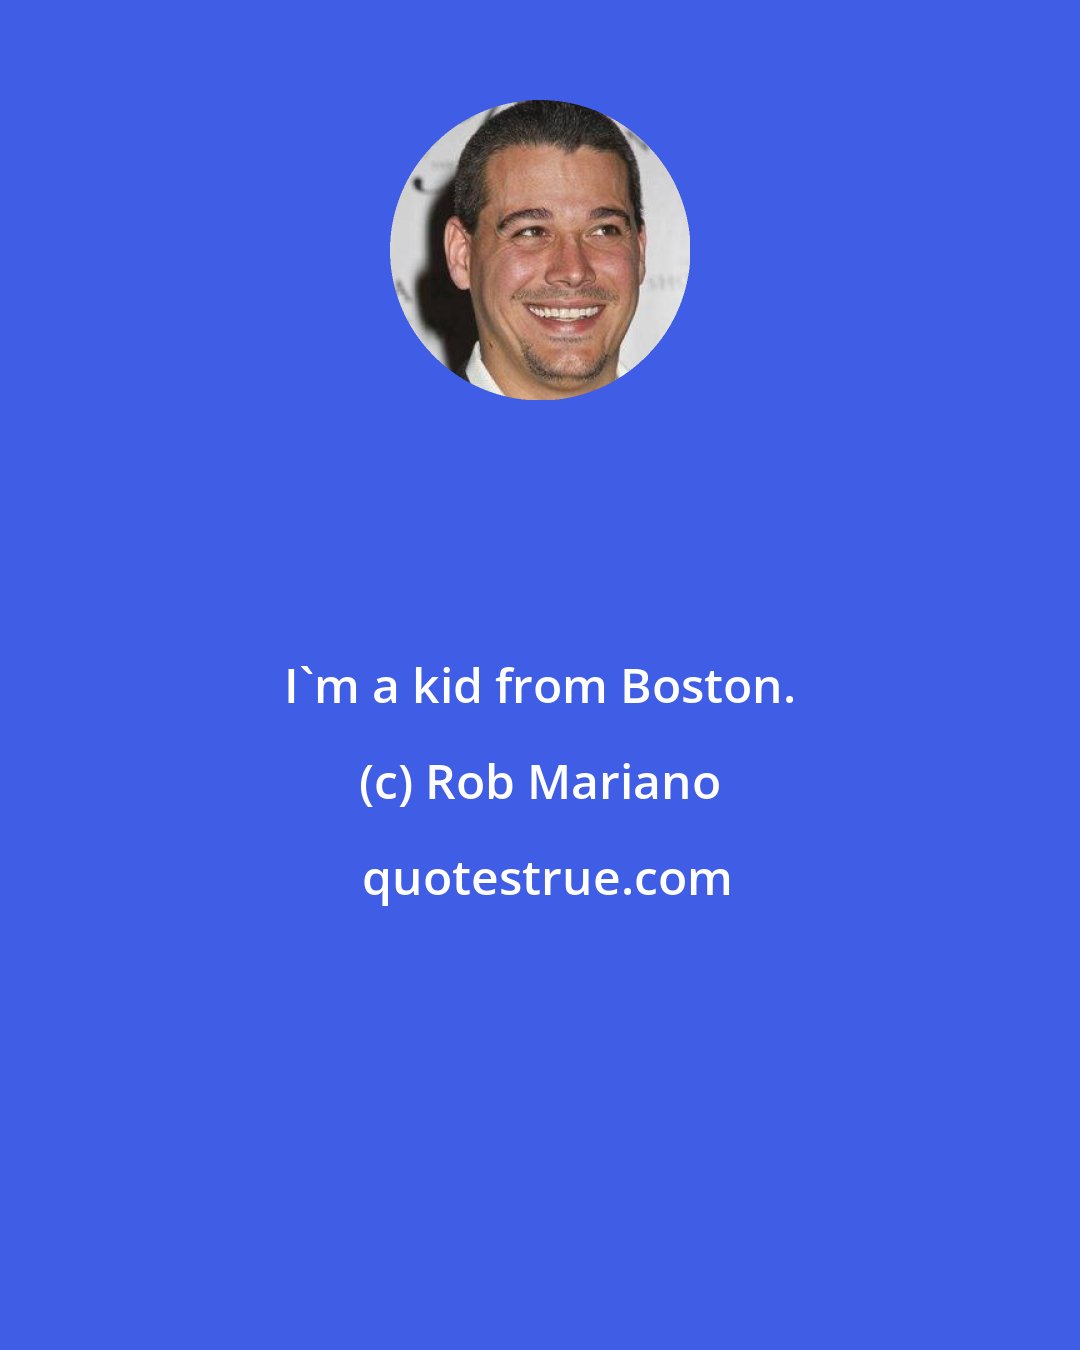 Rob Mariano: I'm a kid from Boston.